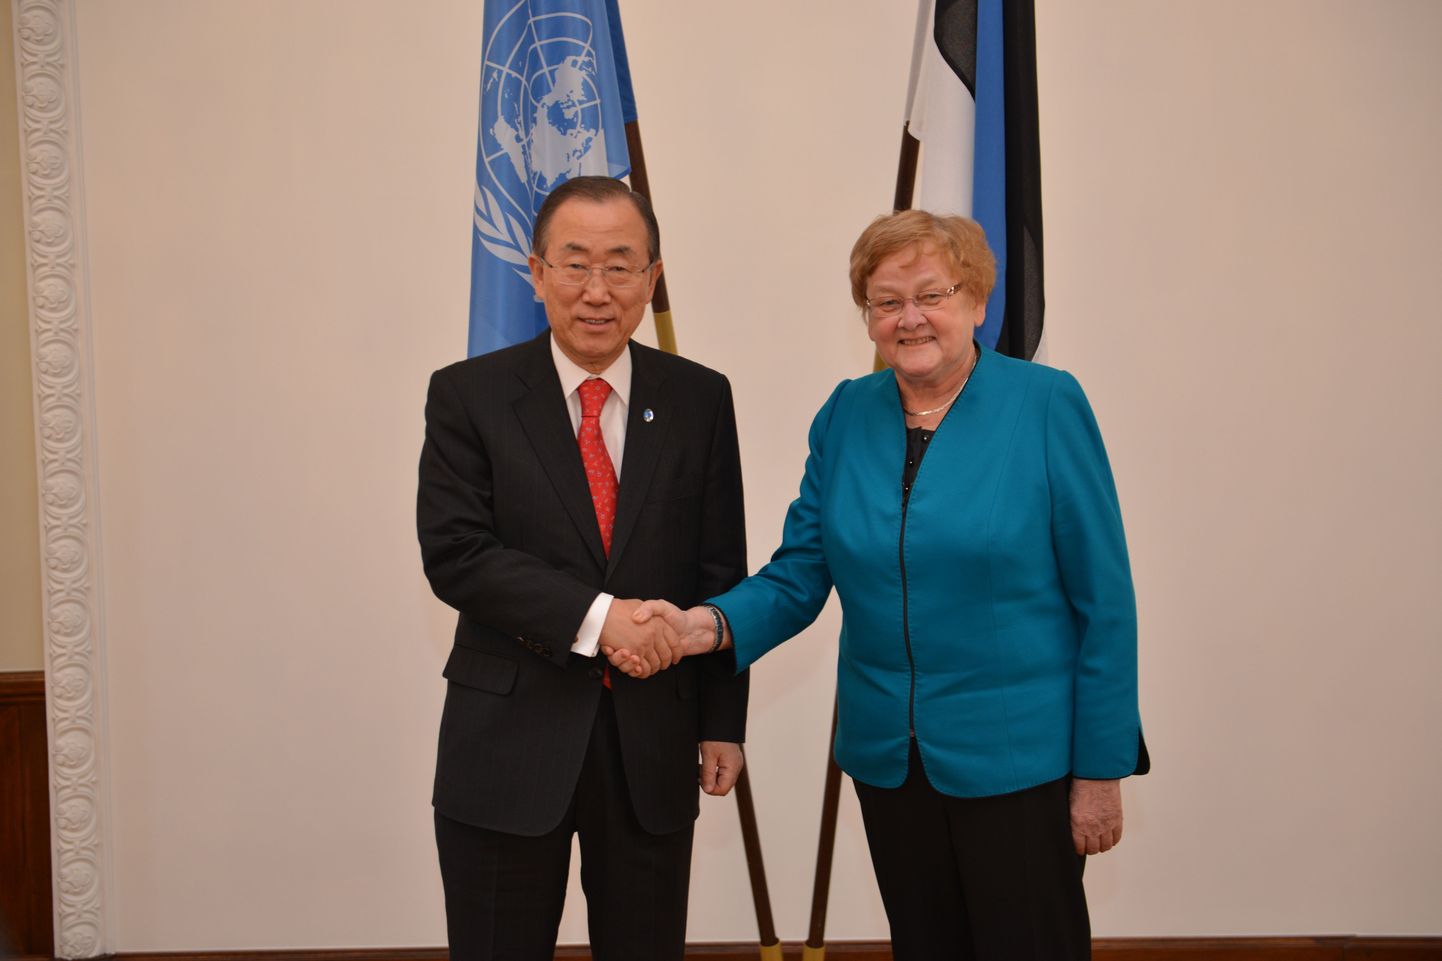 Ban Ki-mooni ja Ene Ergma kohtumine.